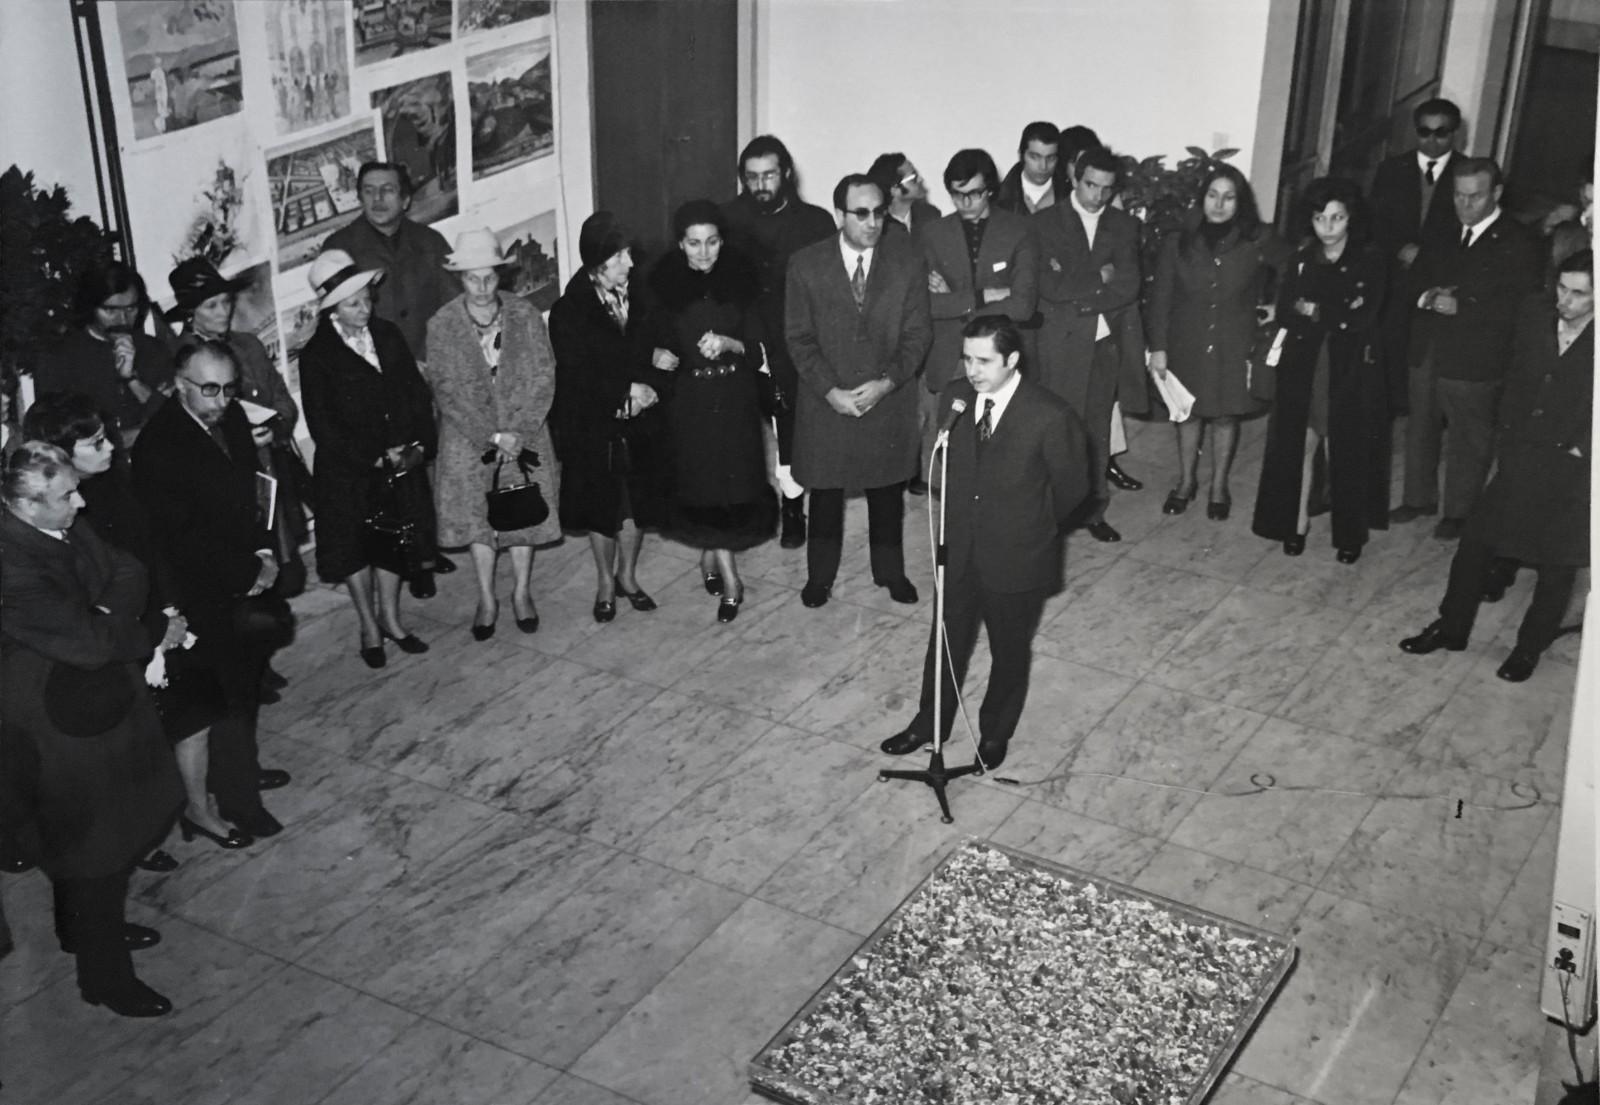 View of the exhibition, "Yves Klein", Galleria Civica d'Arte Moderna e Contemporanea, 1970